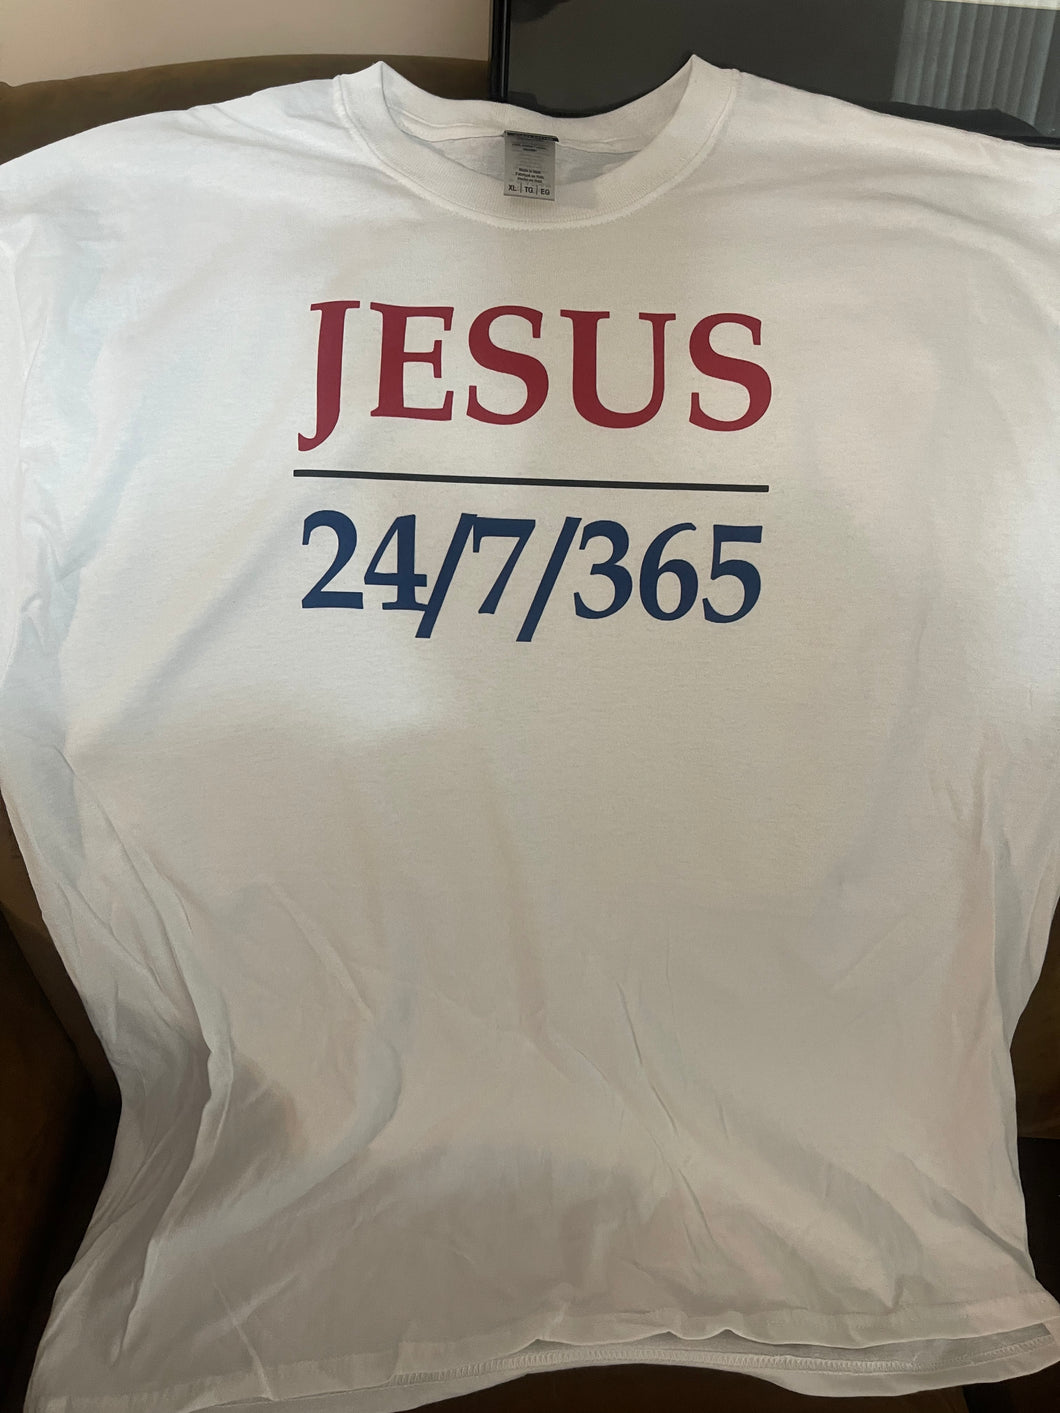 JESUS 24/7/365 tshirt